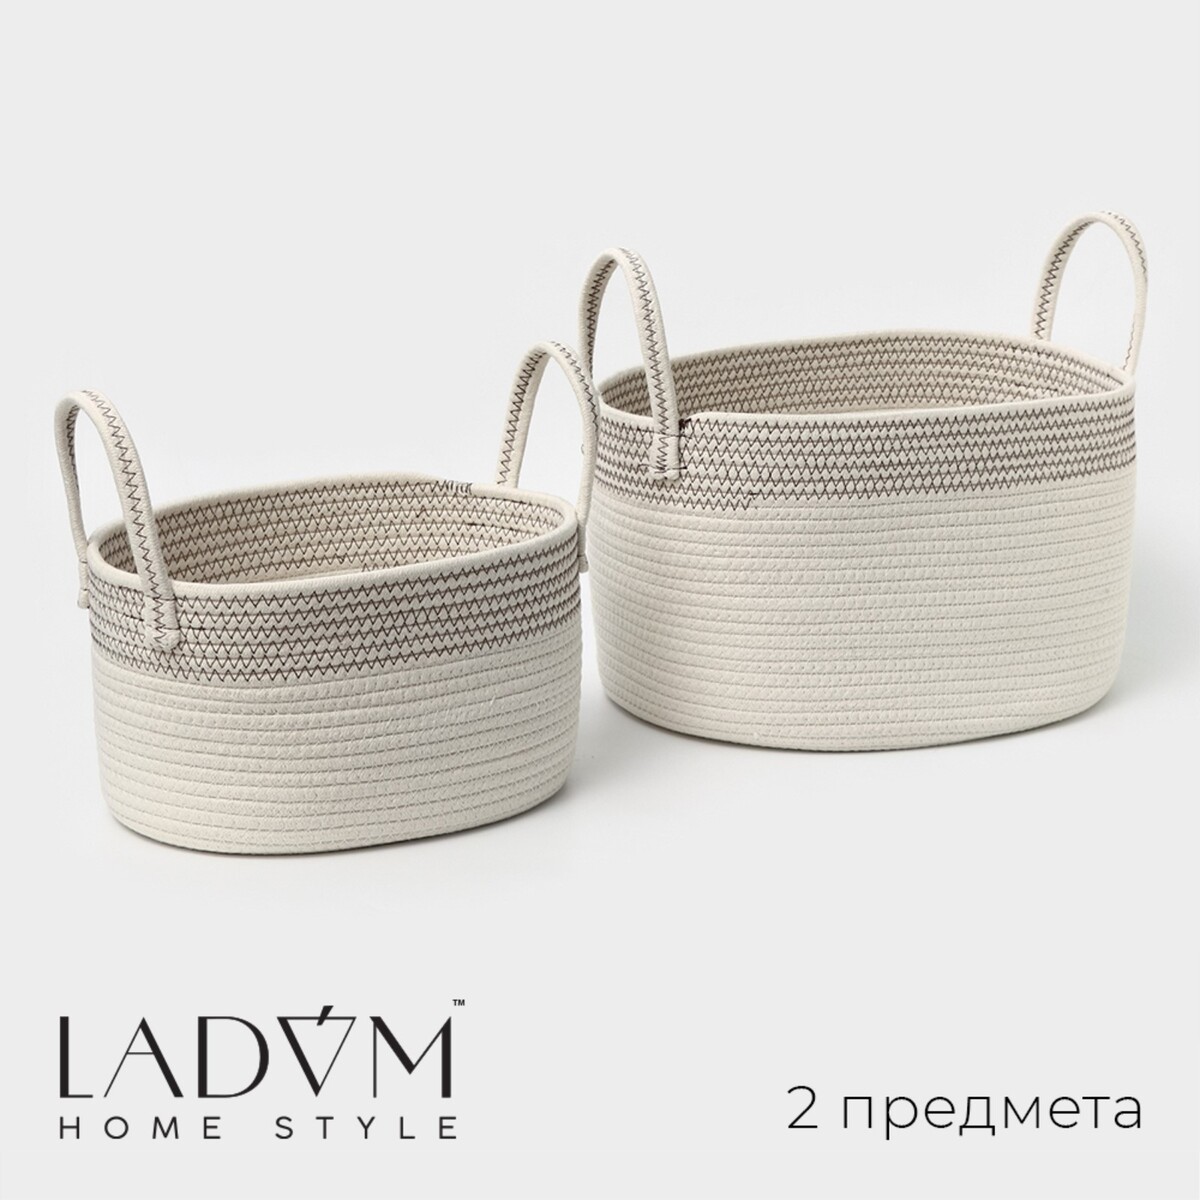 Набор корзин для хранения ladо́m, ручное плетение, хлопок, 2 шт: 30×22×16 см, 37×28×21 см